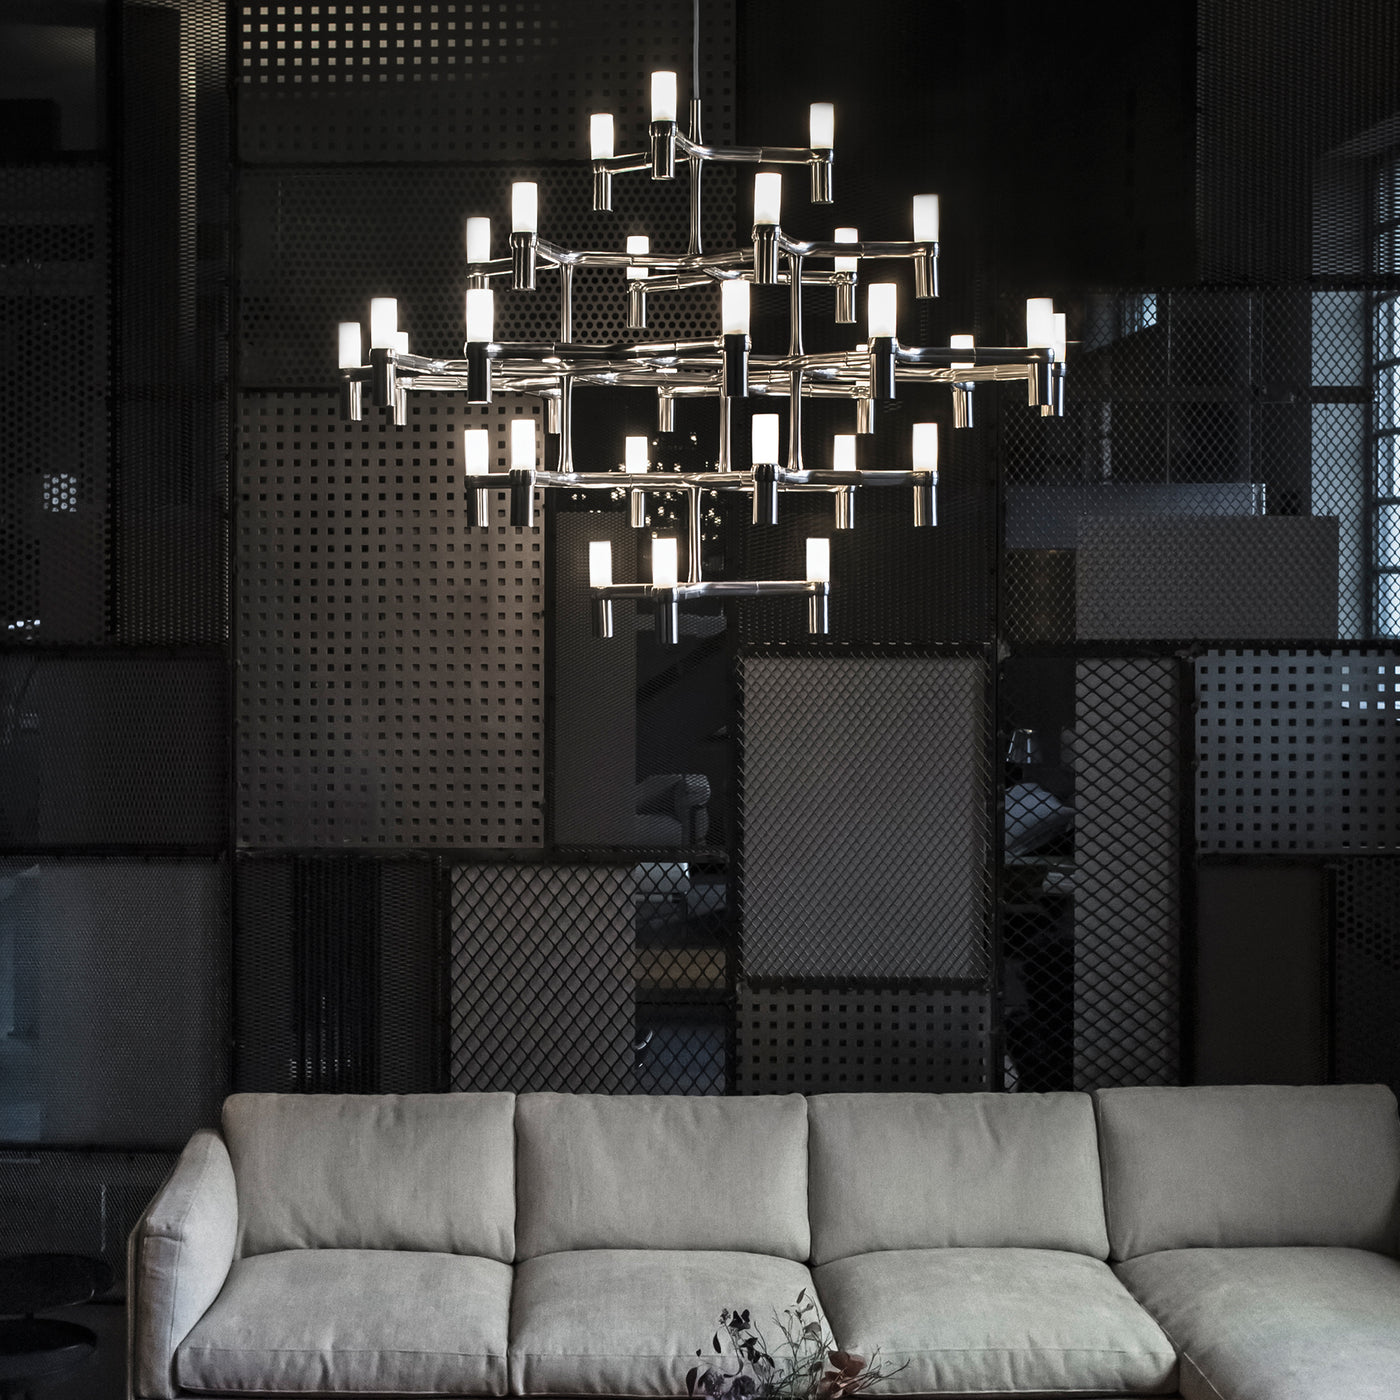 luxusní lustr do obývacího pokoje, černý futuristický lustr, Nemo osvětlení, Nemo lighting, luxusní osvětlení